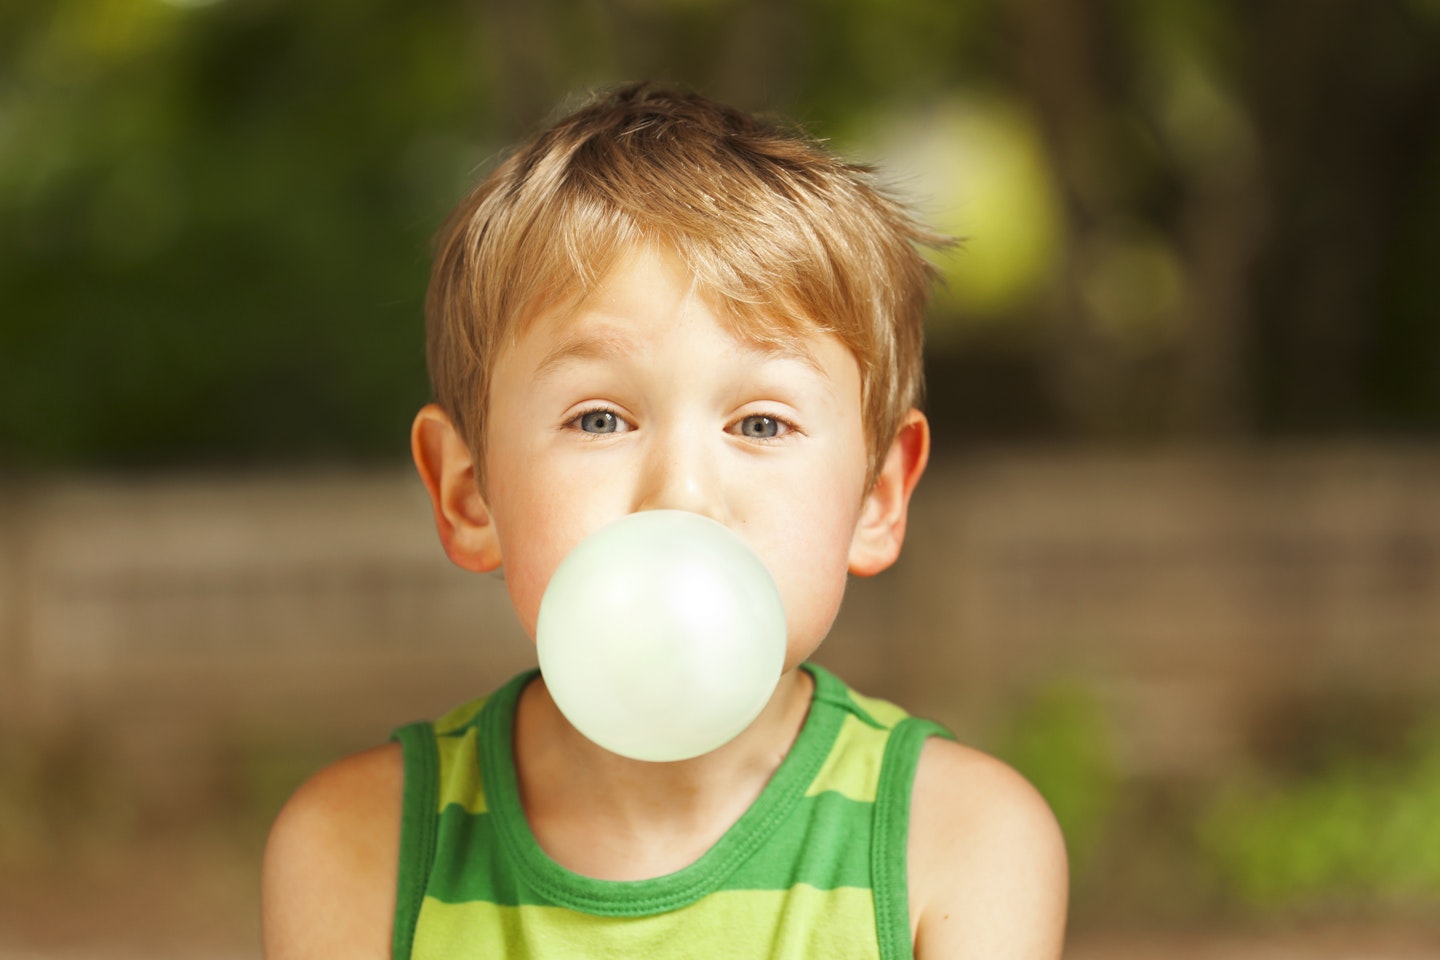 Child blowing bubblegum